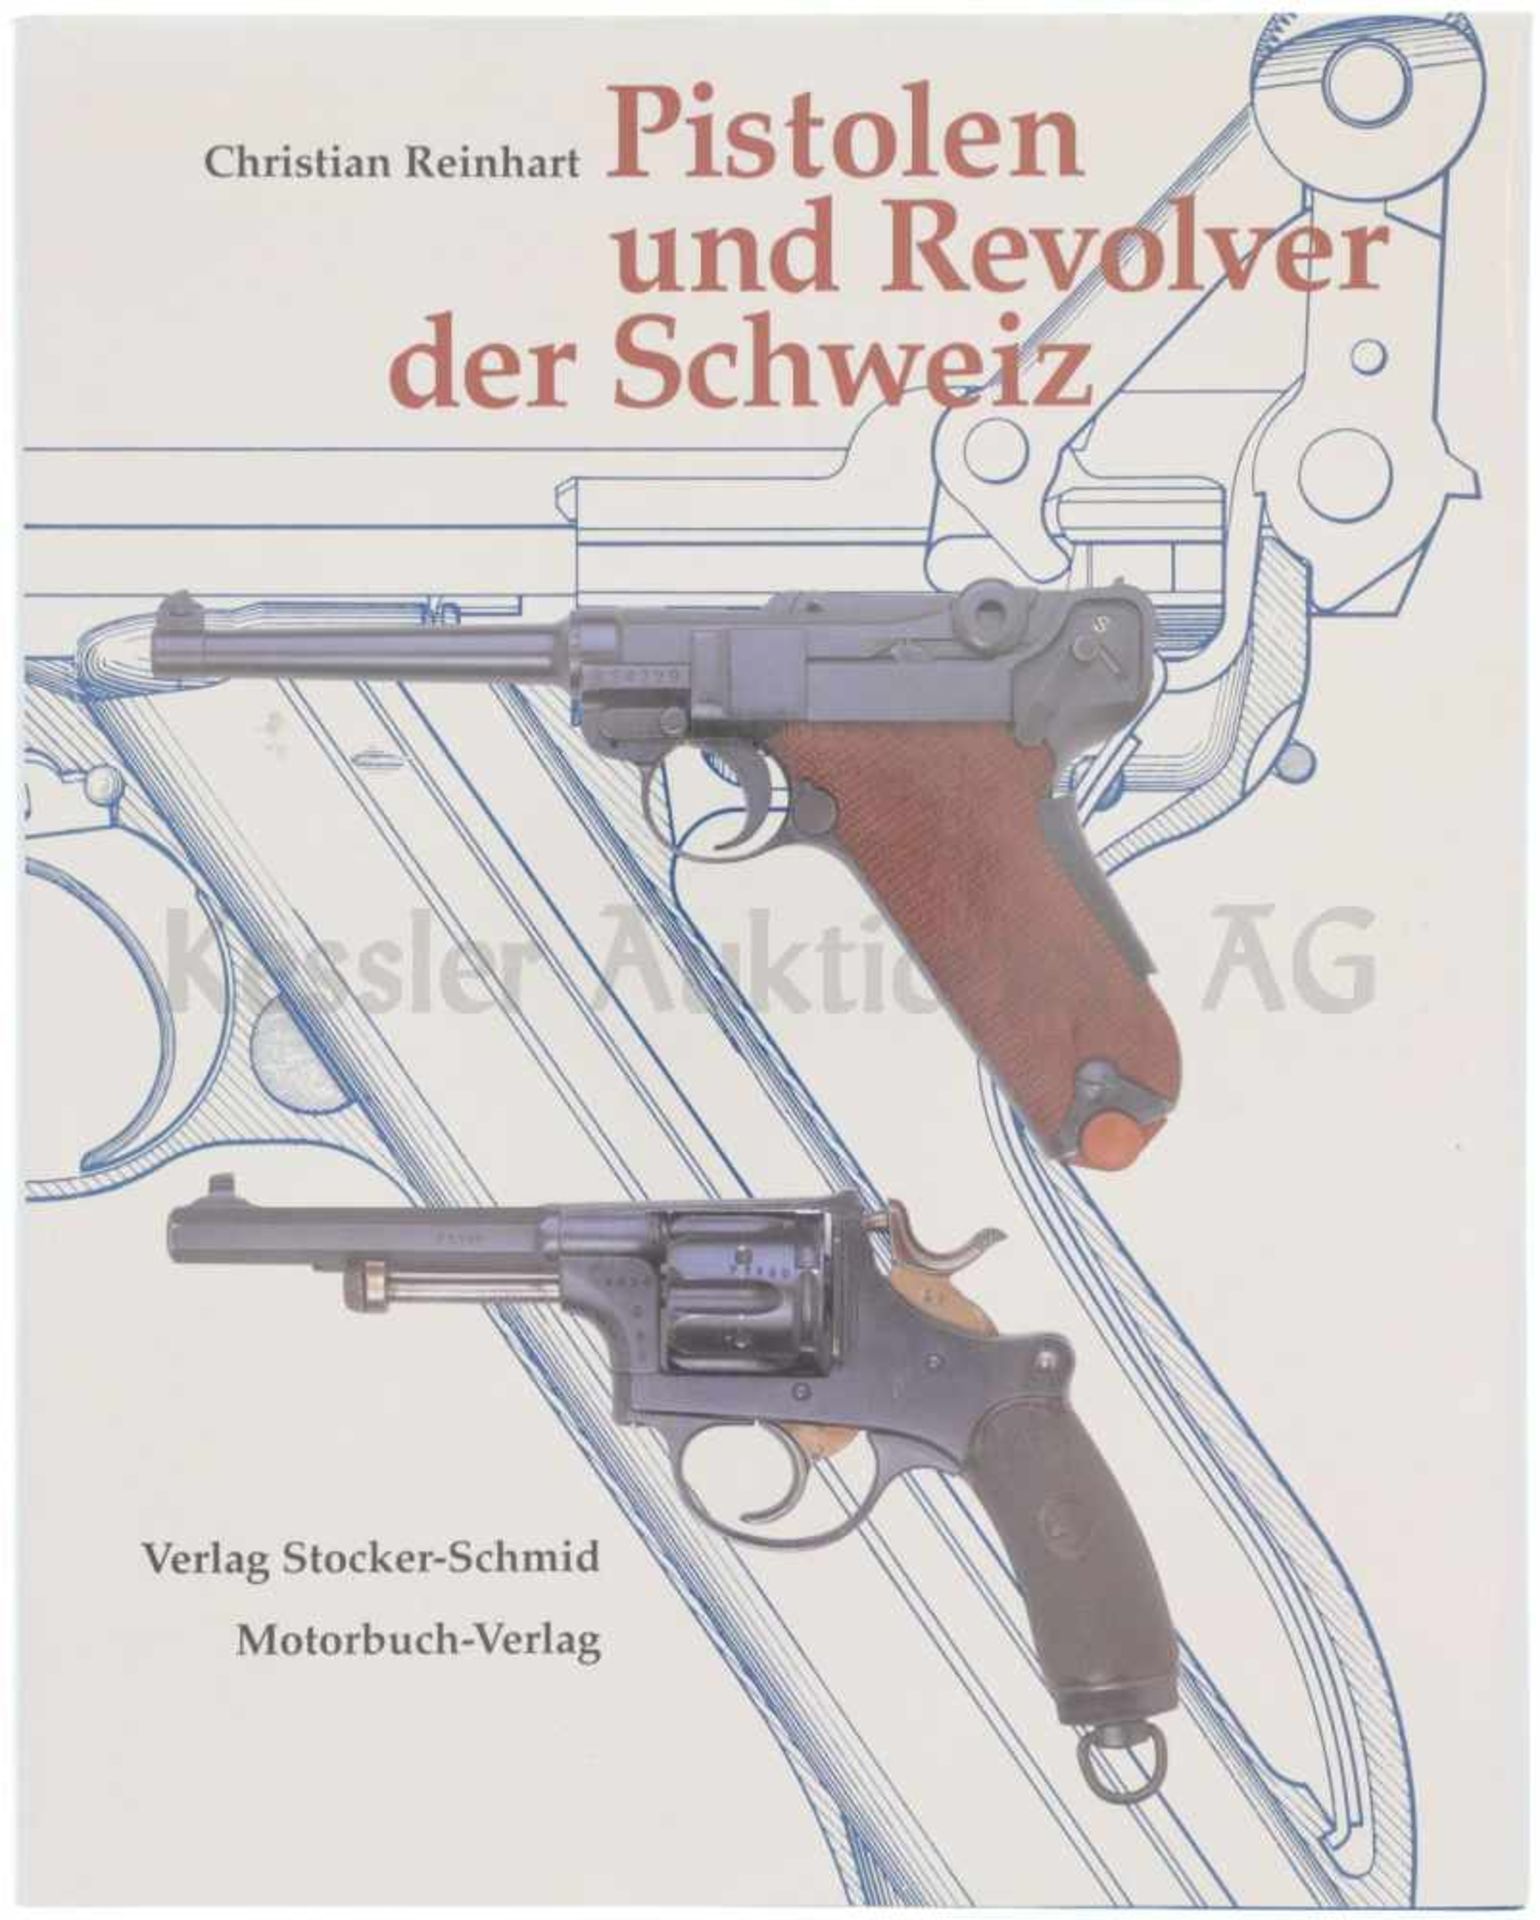 Pistolen und Revolver der Schweiz von Christian Reinhart, Michael am Rhyn und Jürg A.Meier.